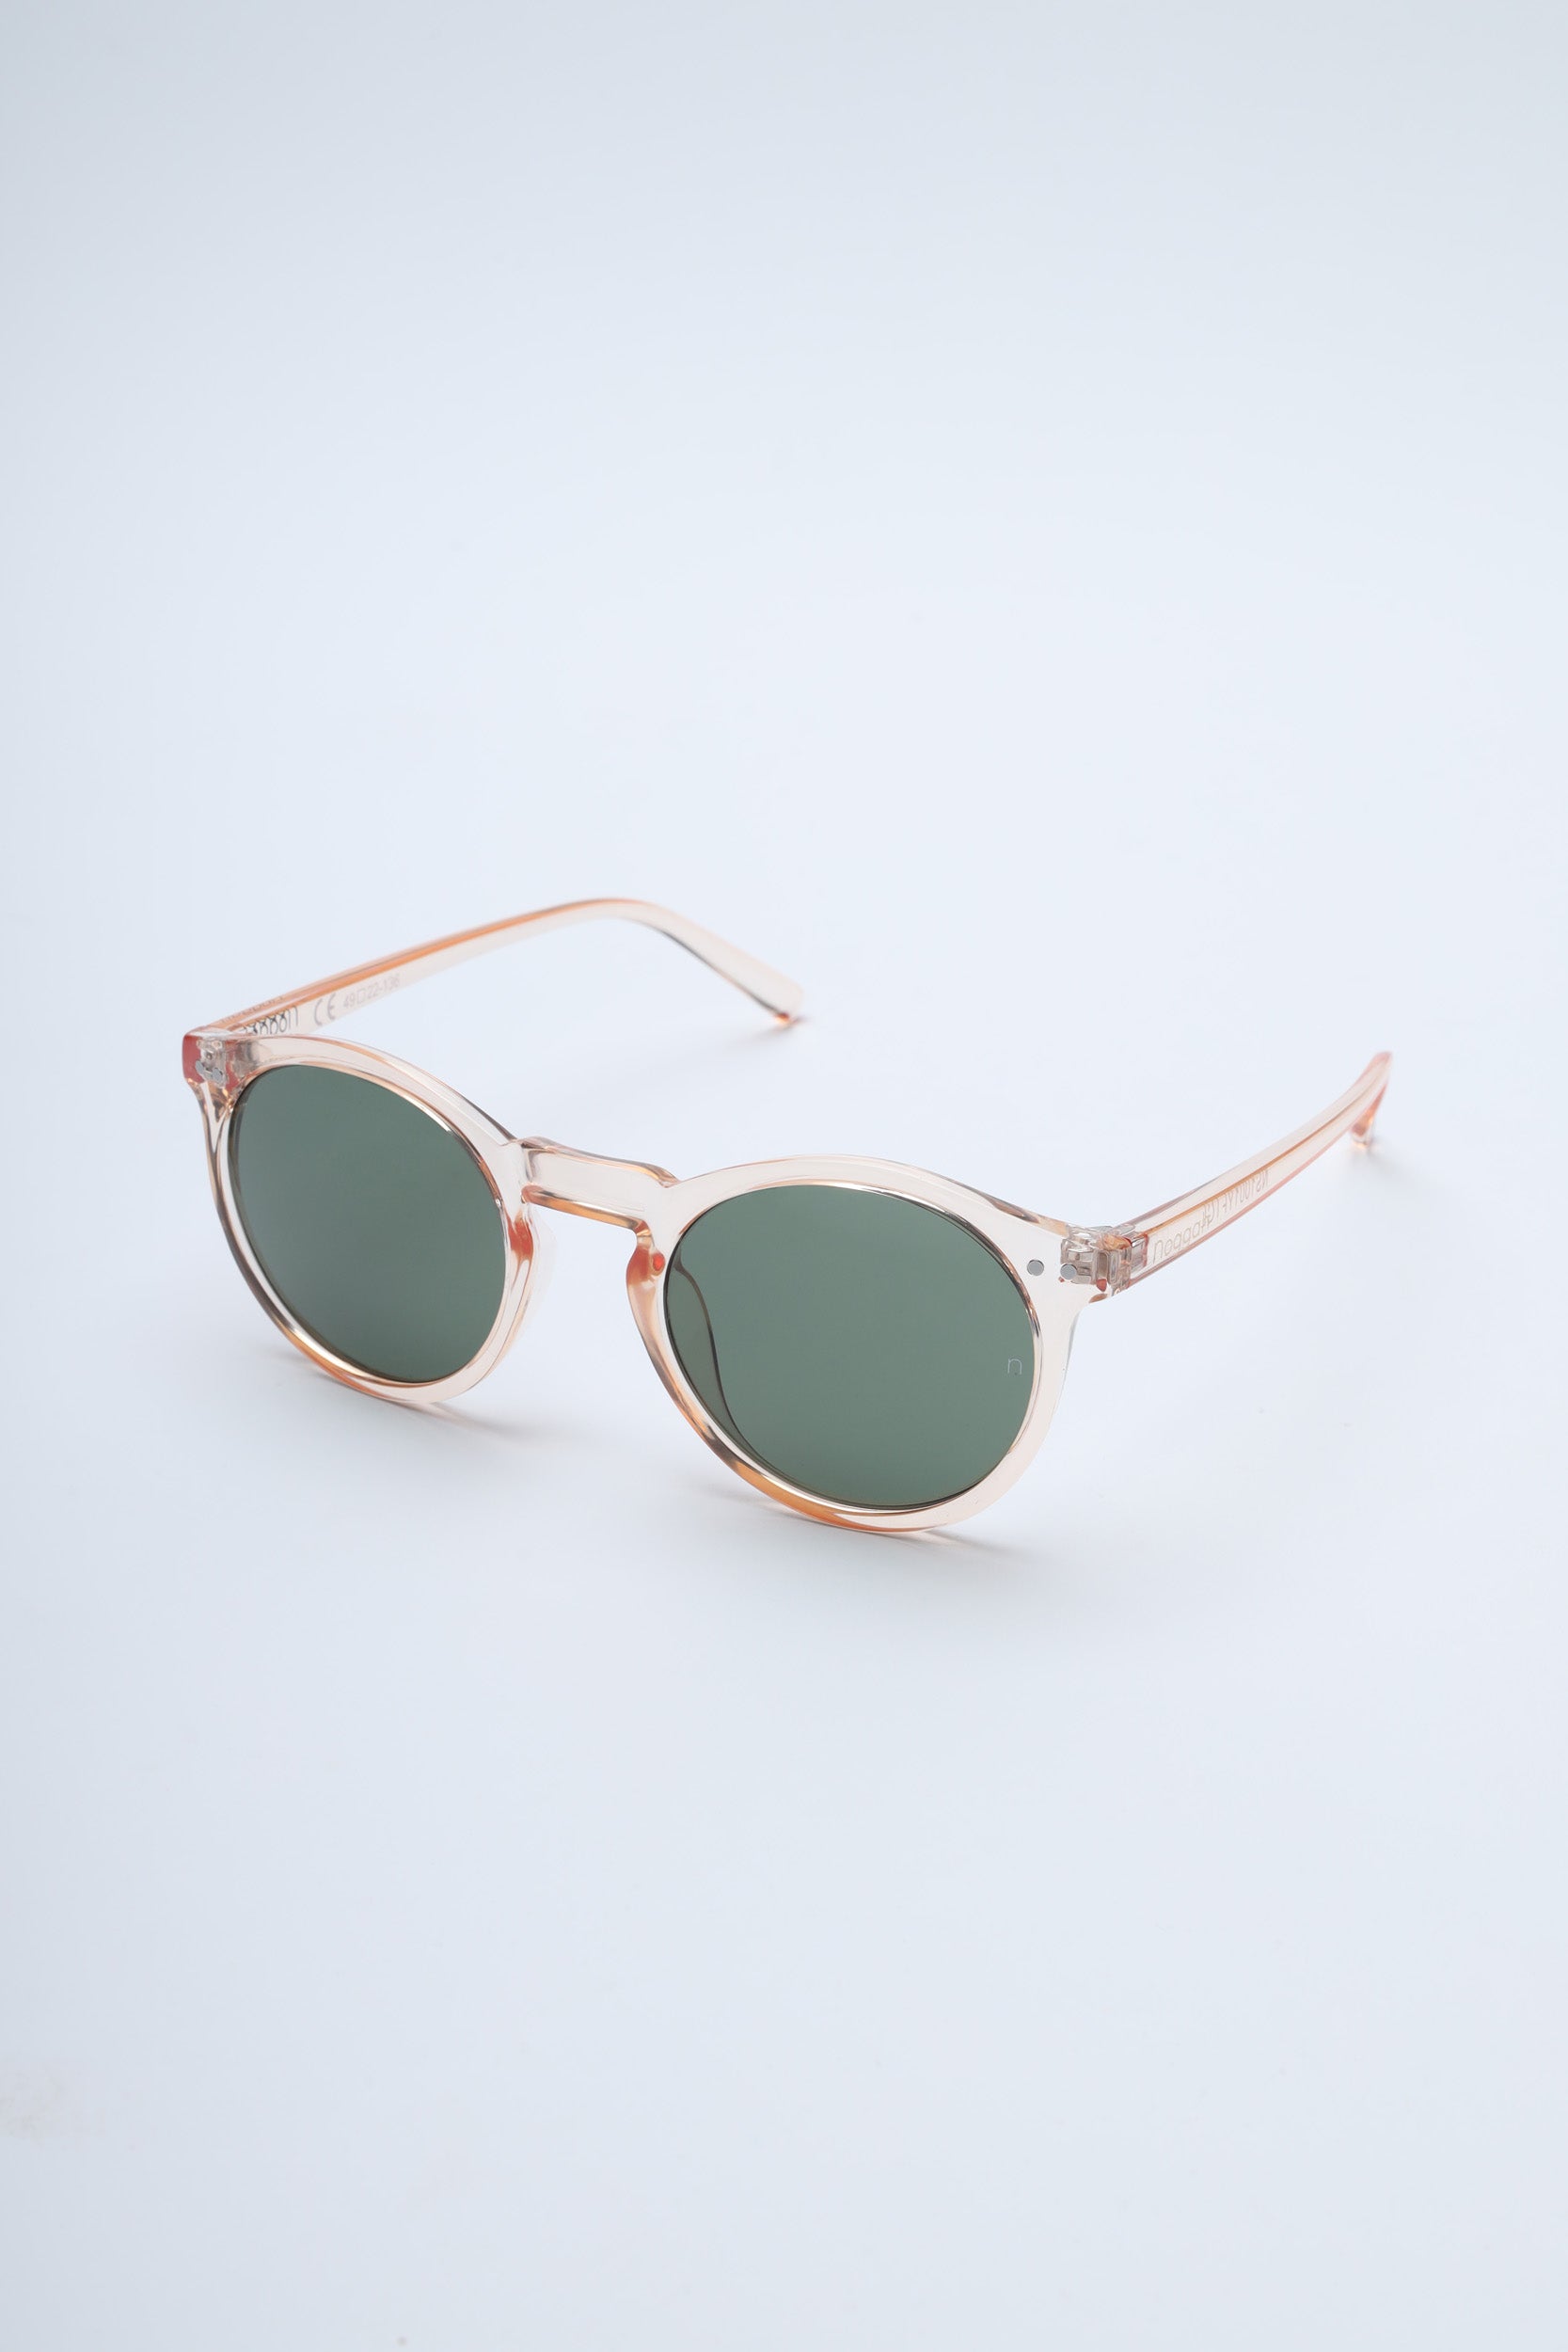 Buy SOJOS Oversized Classic Aviator Sunglasses for Men Women Mirrored Flat  Lens SJ1083 Online at desertcartINDIA